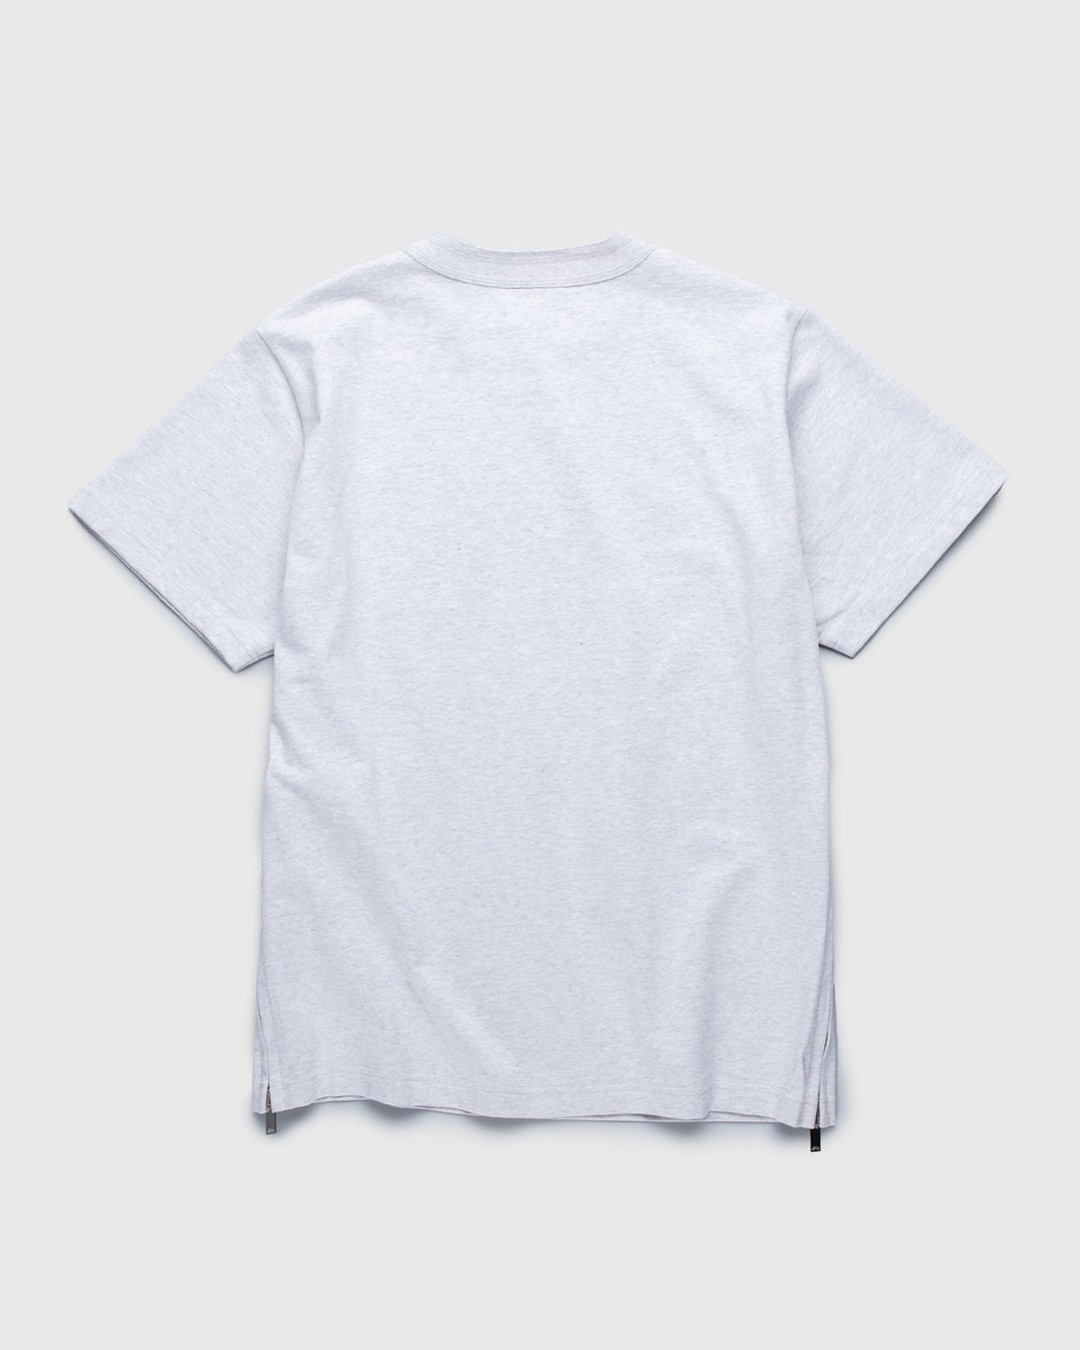 A.P.C. x Sacai – Kiyo T-Shirt Light Grey - T-Shirts - Grey - Image 2